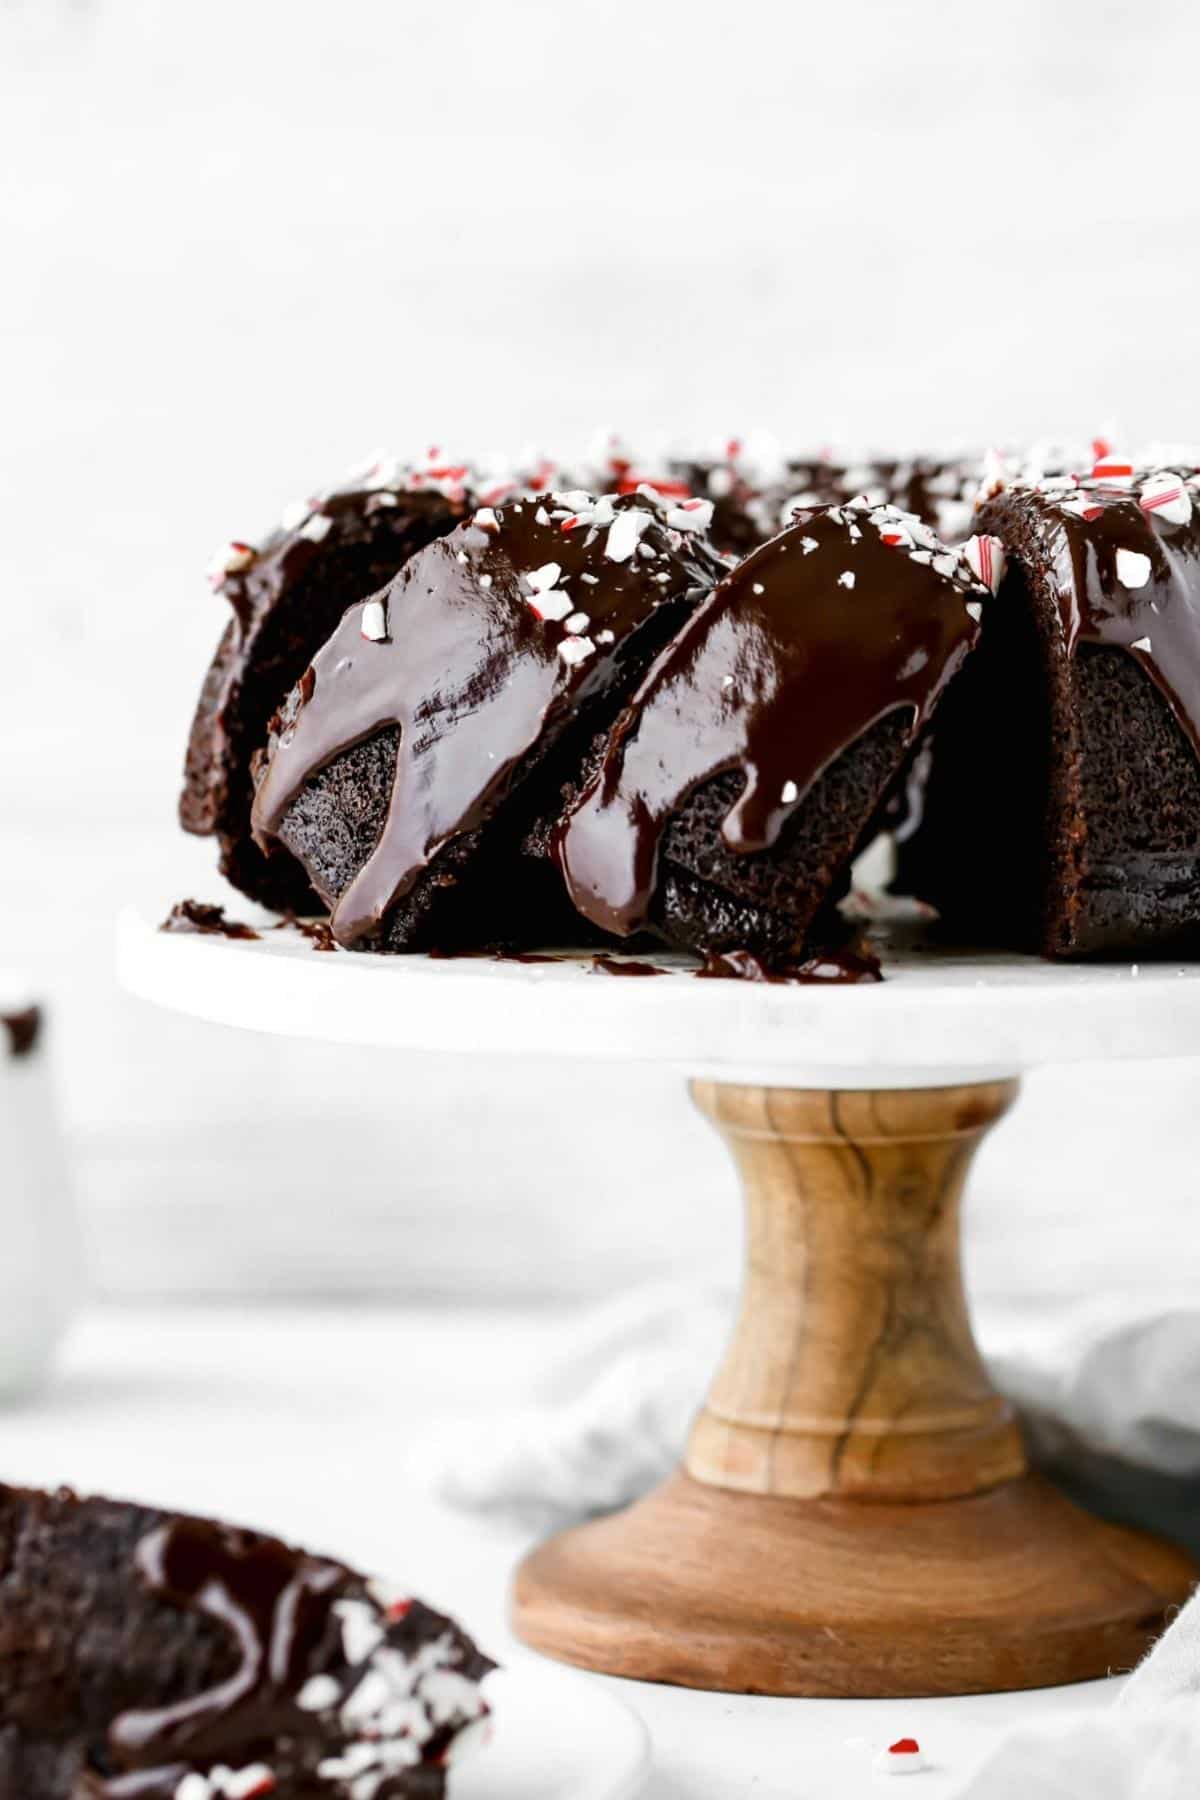 https://butternutbakeryblog.com/wp-content/uploads/2018/12/chocolate-peppermint-bundt-cake-1.jpg